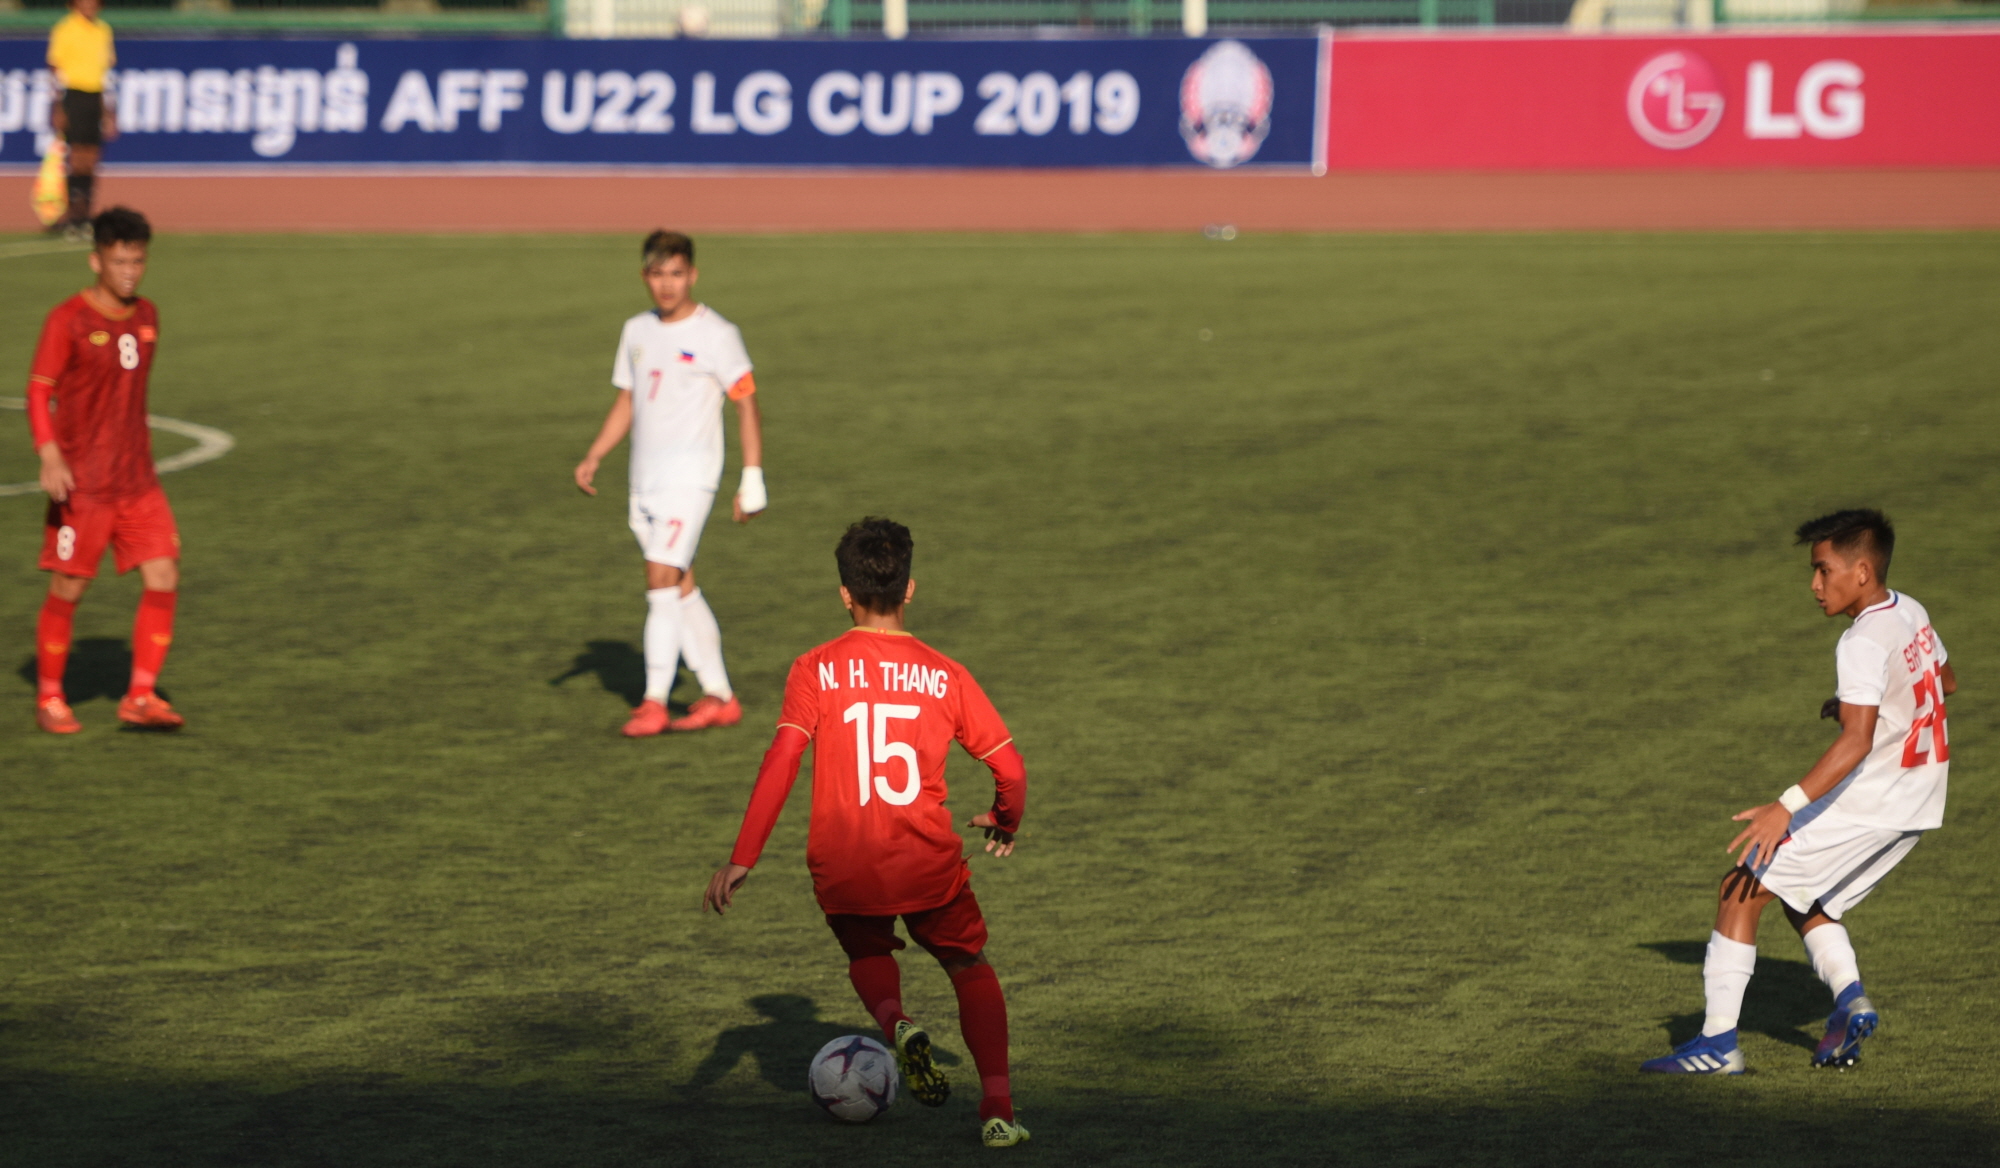 14년만의 동남아 U-22 축구대회 공식 후원